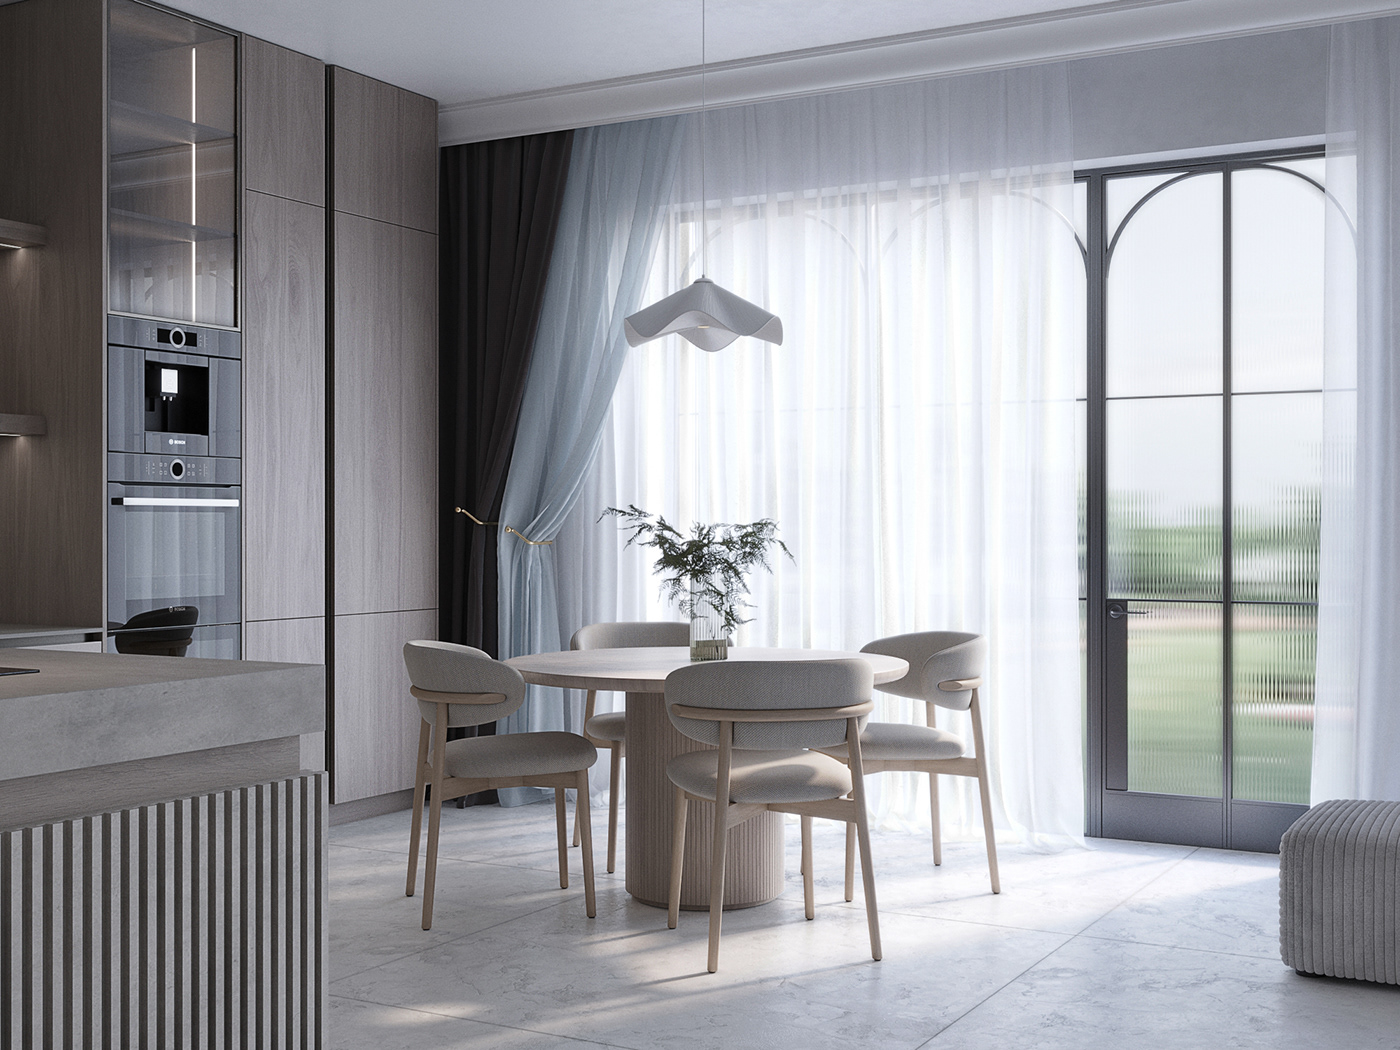 3d max 3d visualizer corona render  interior design  design 3D Visualization living room design kitchen design 3d visual